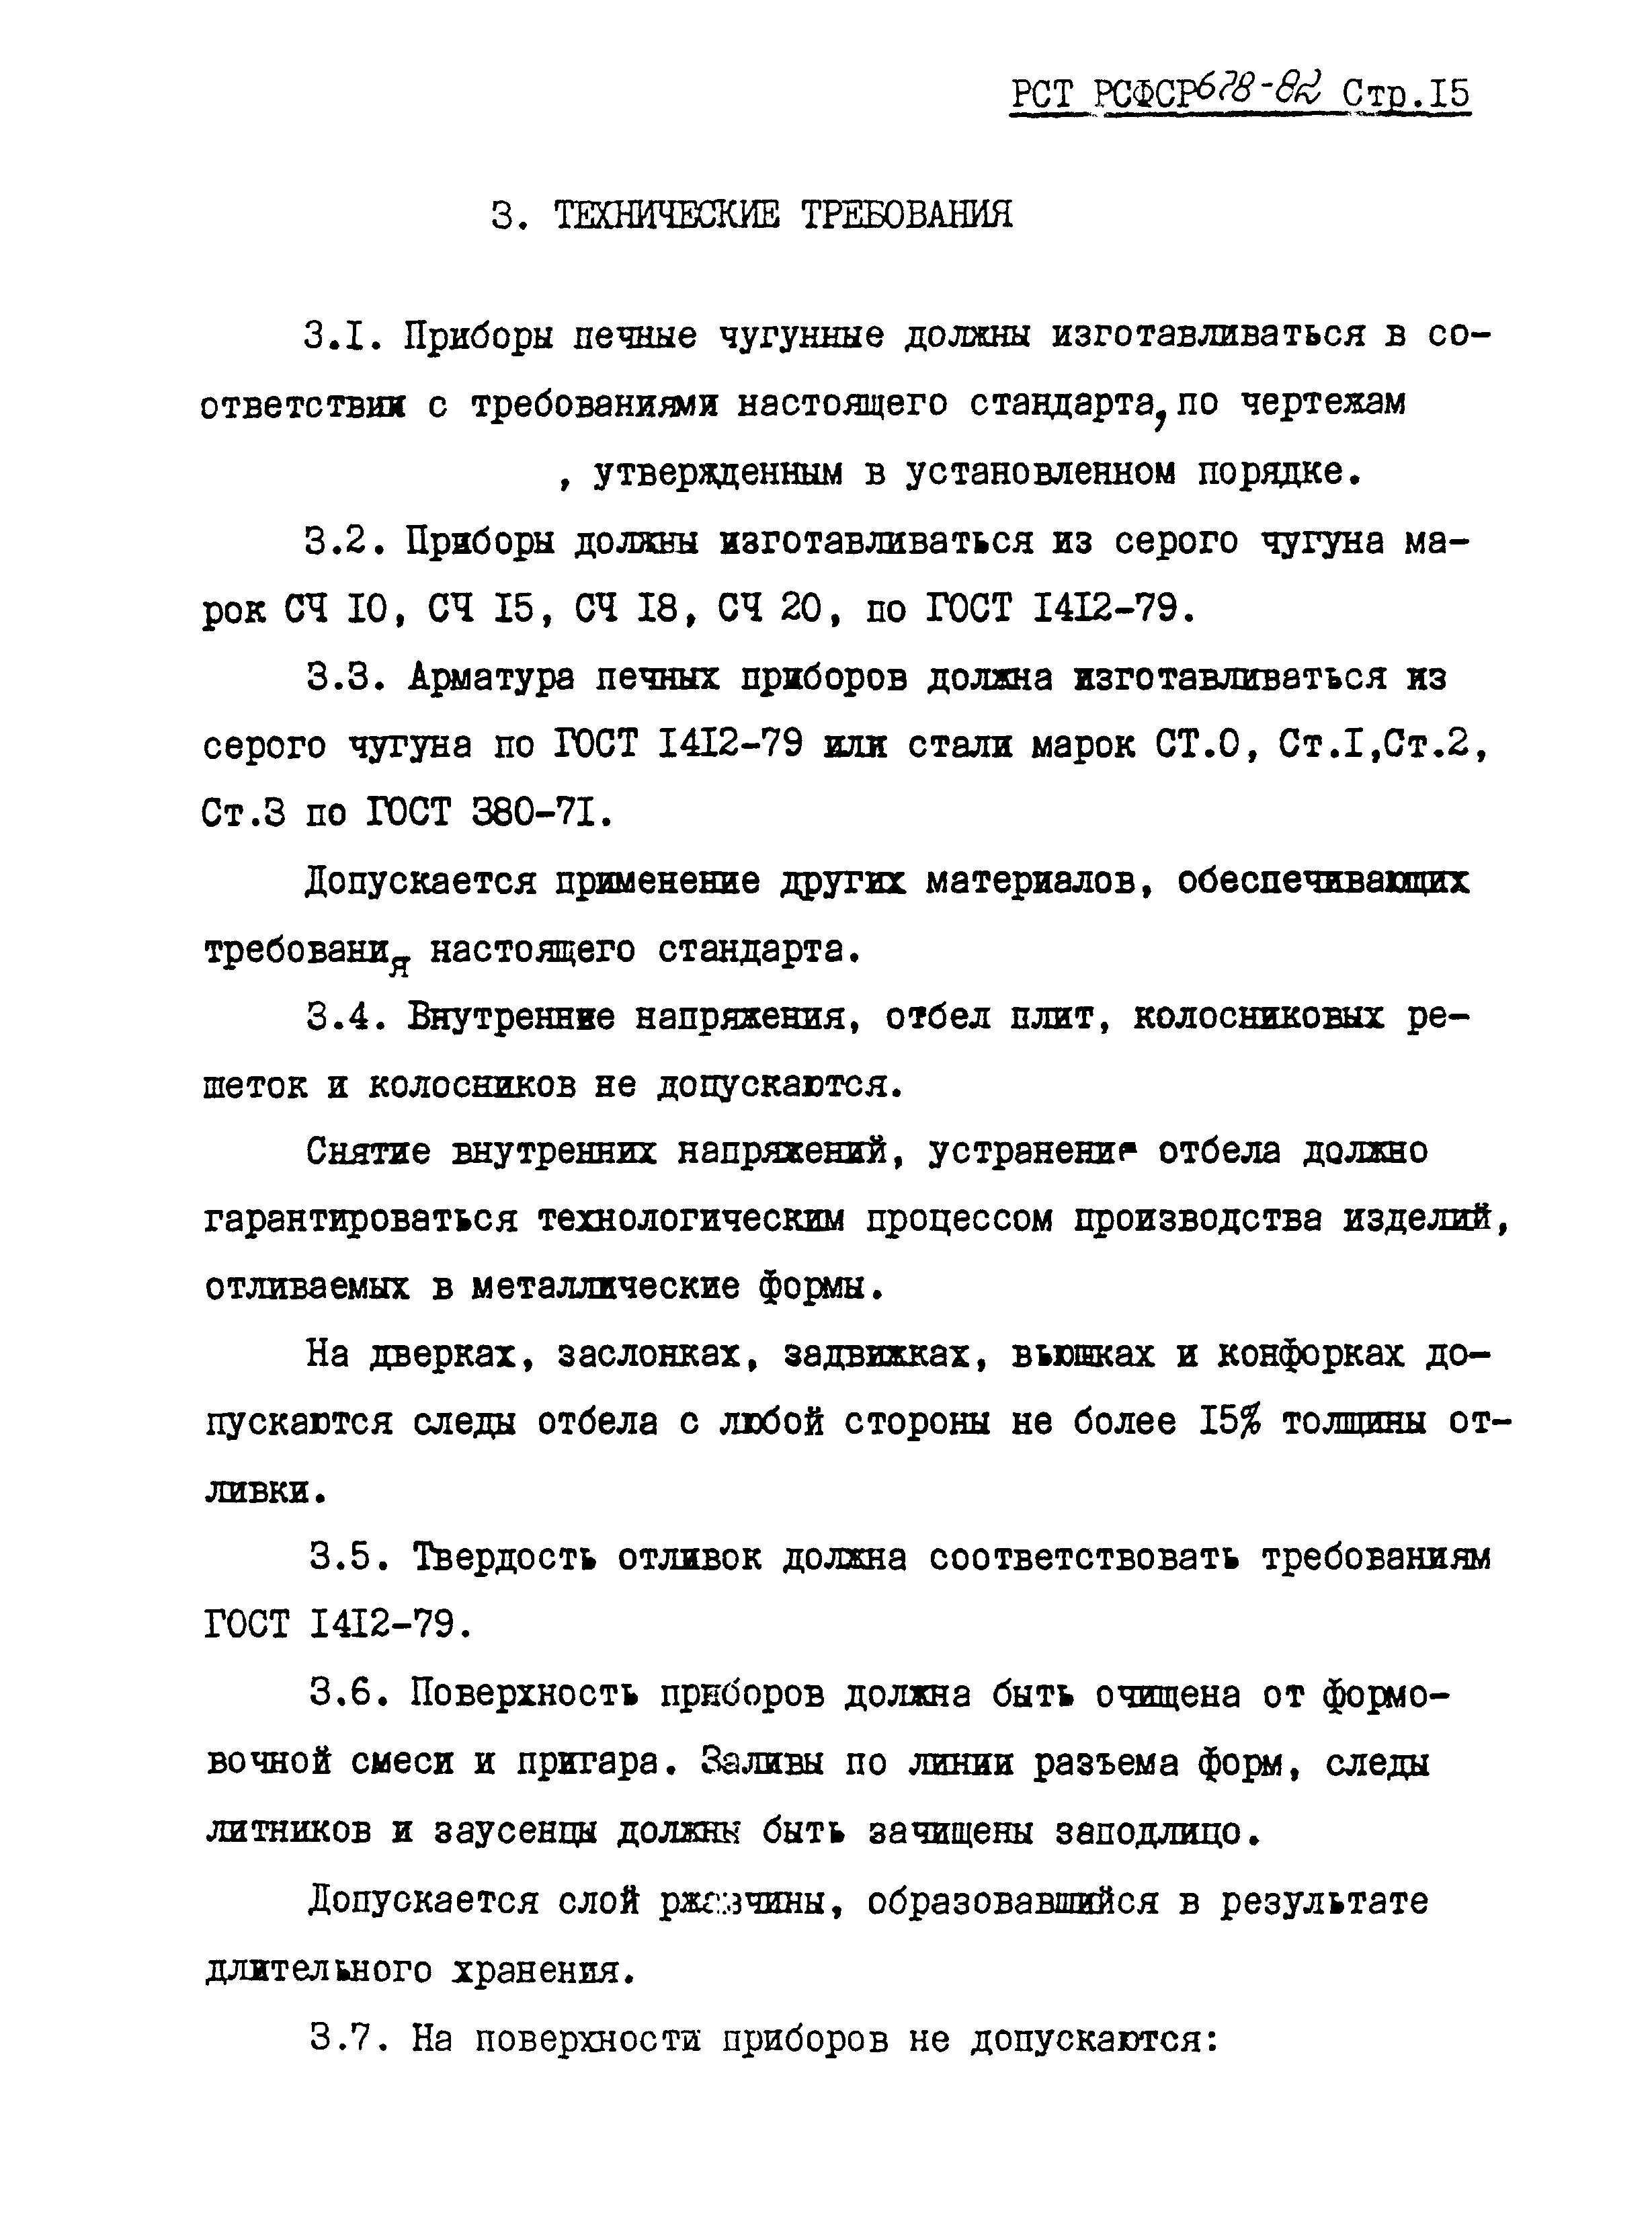 РСТ РСФСР 678-82